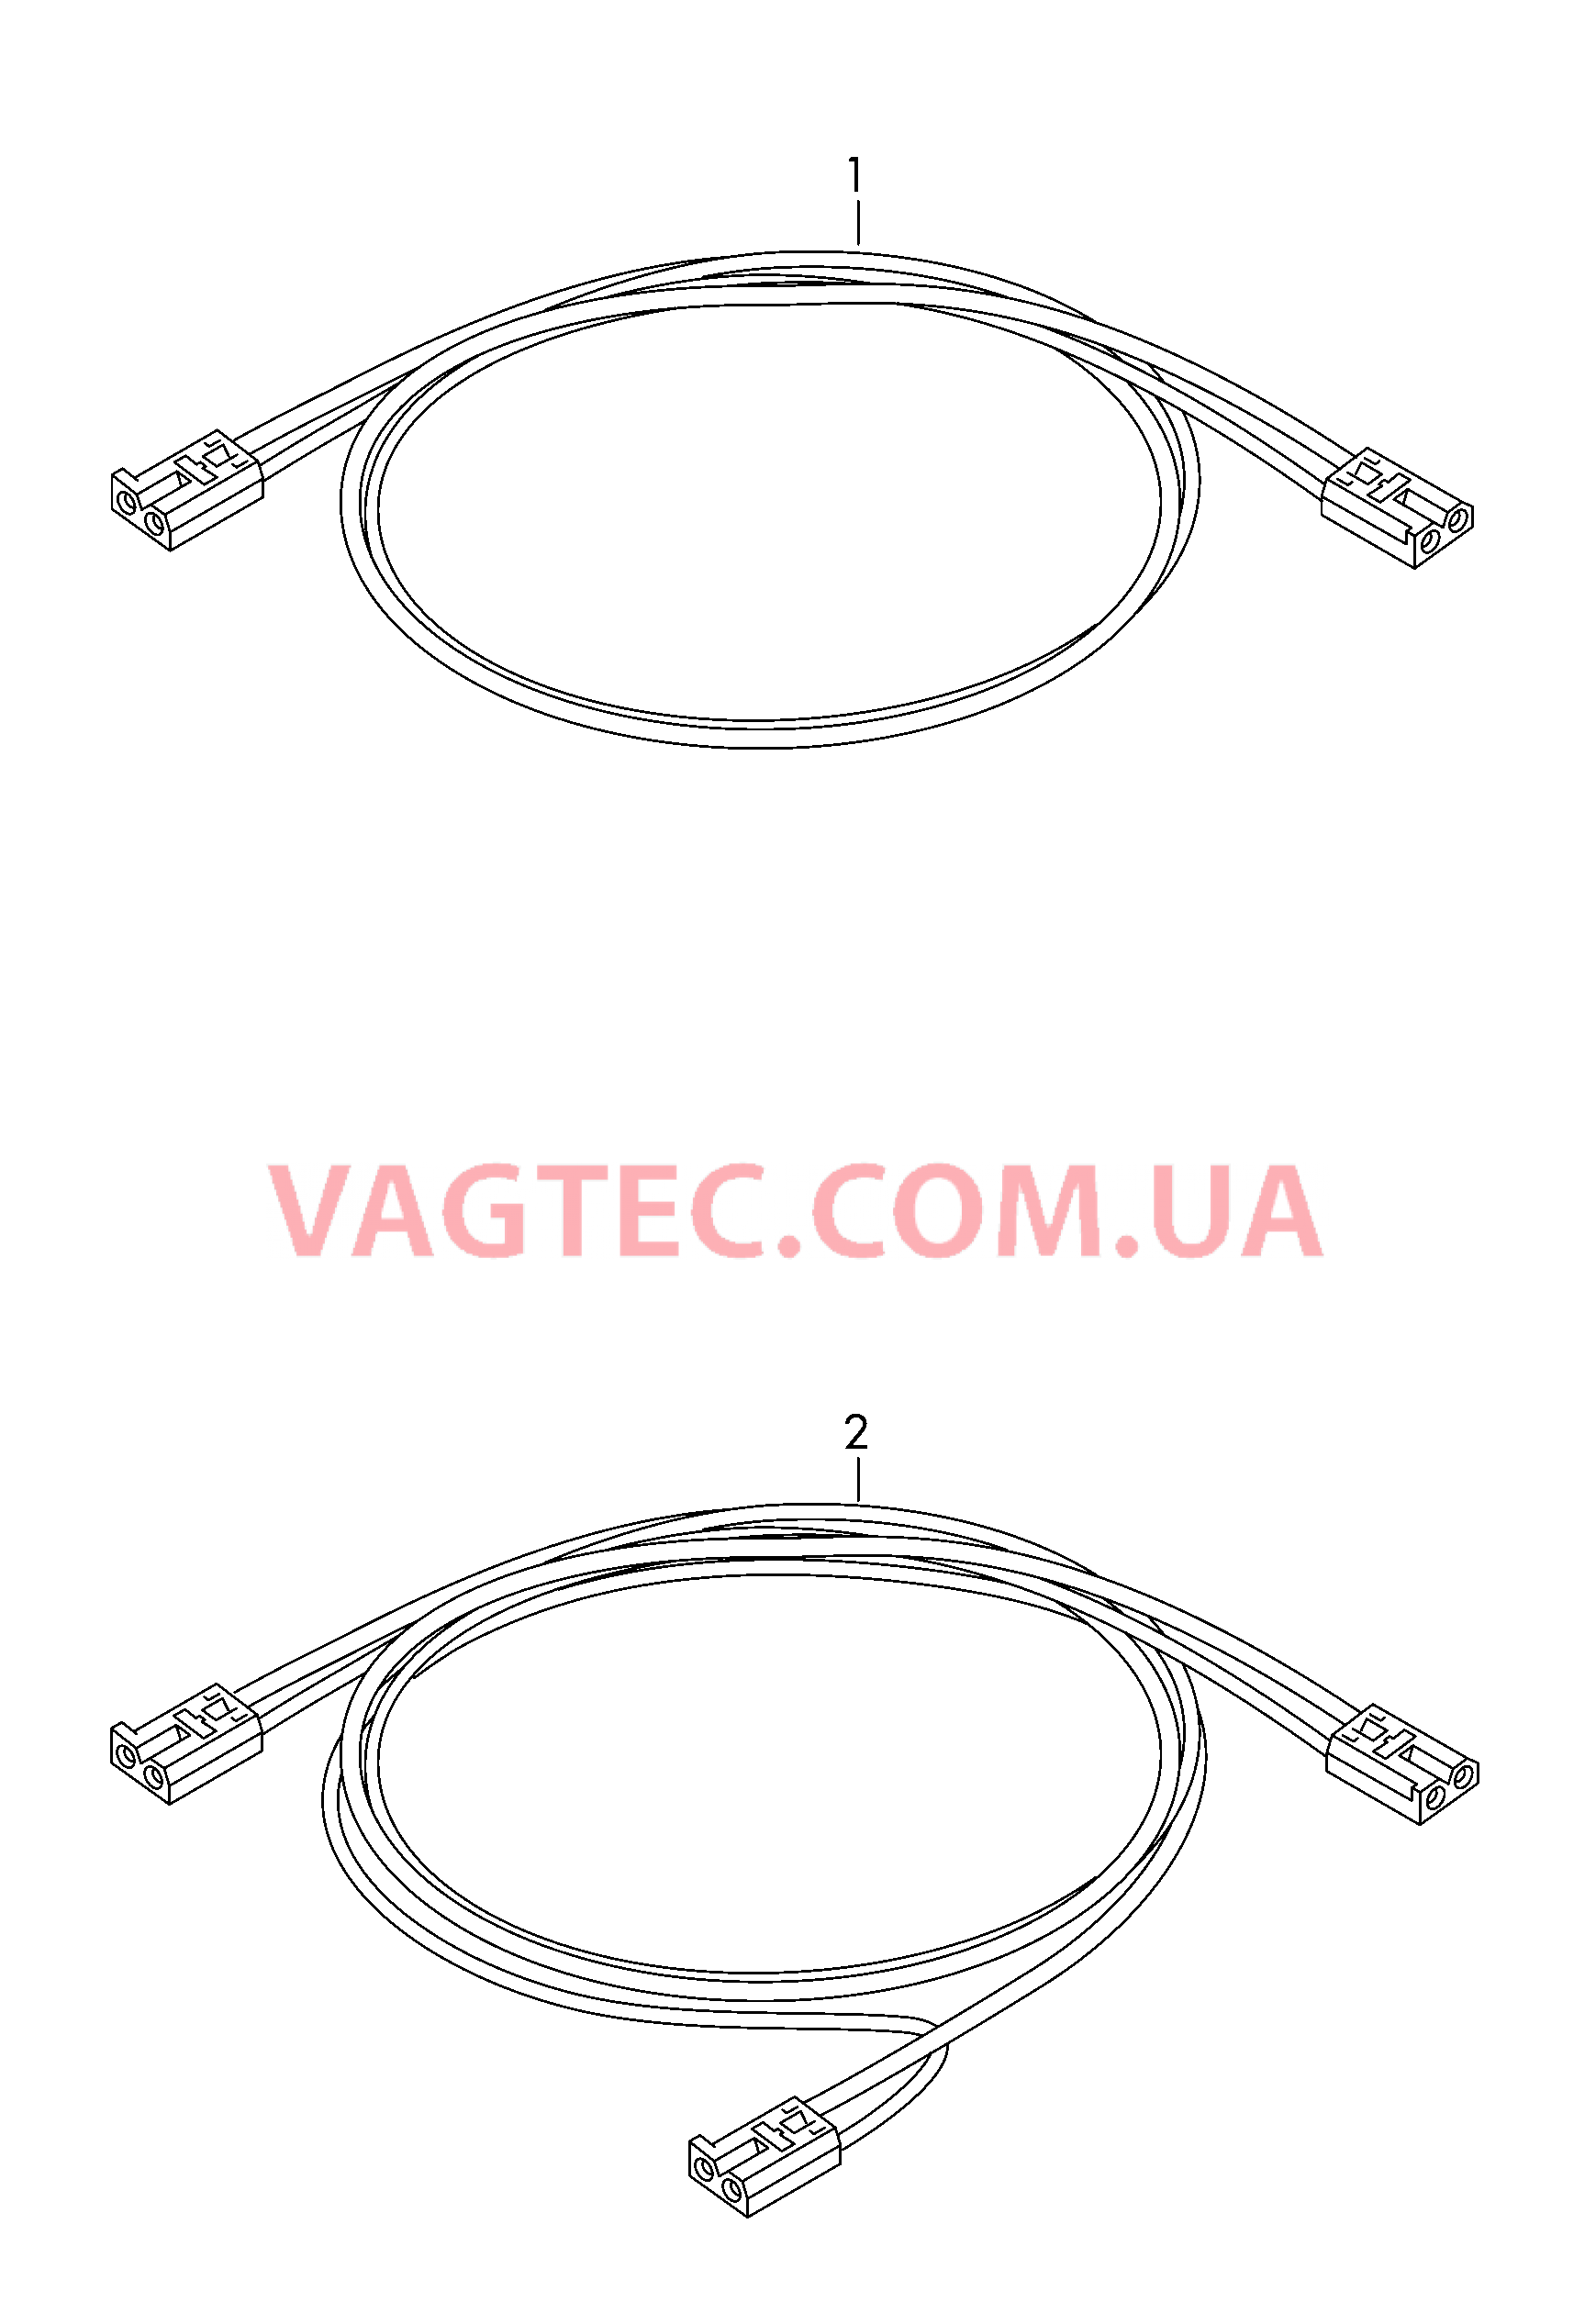 Оптоволоконный кабель  для VOLKSWAGEN Crafter 2014